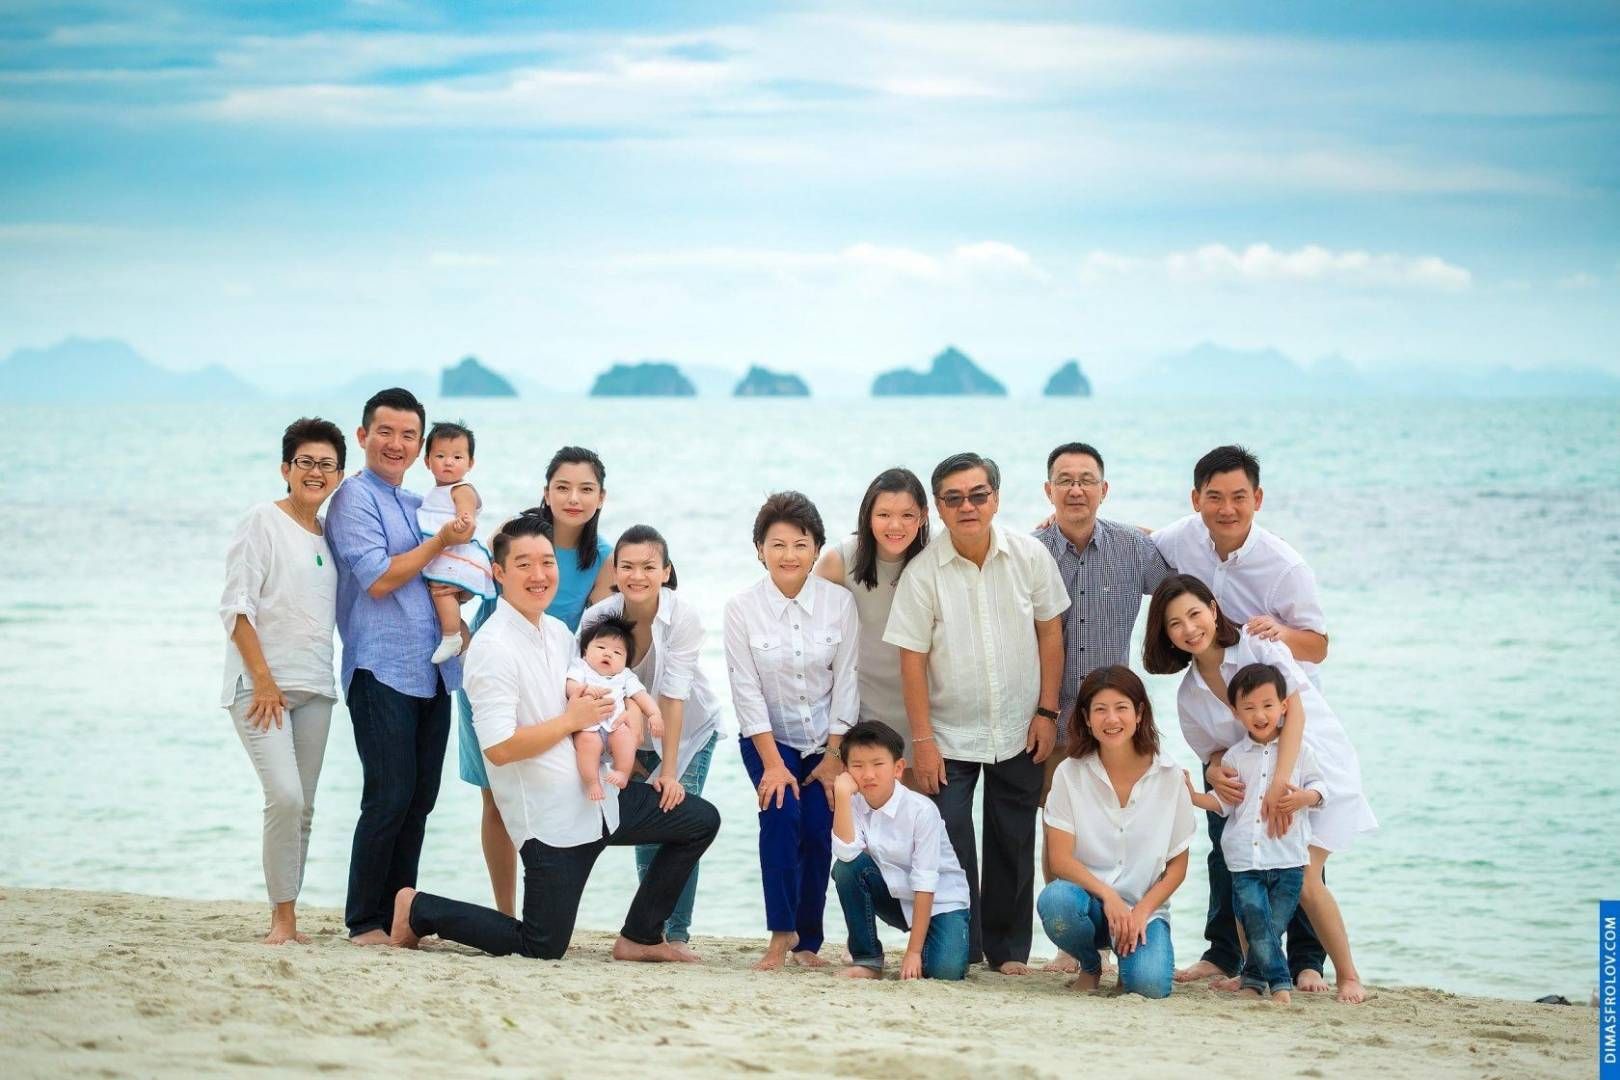 ถ่ายภาพกับครอบครัวใหญ่ ณ เกาะสมุย. ช่างภาพ ดีมัส โฟรล็อกซ์. บาทต่อภาพ1780